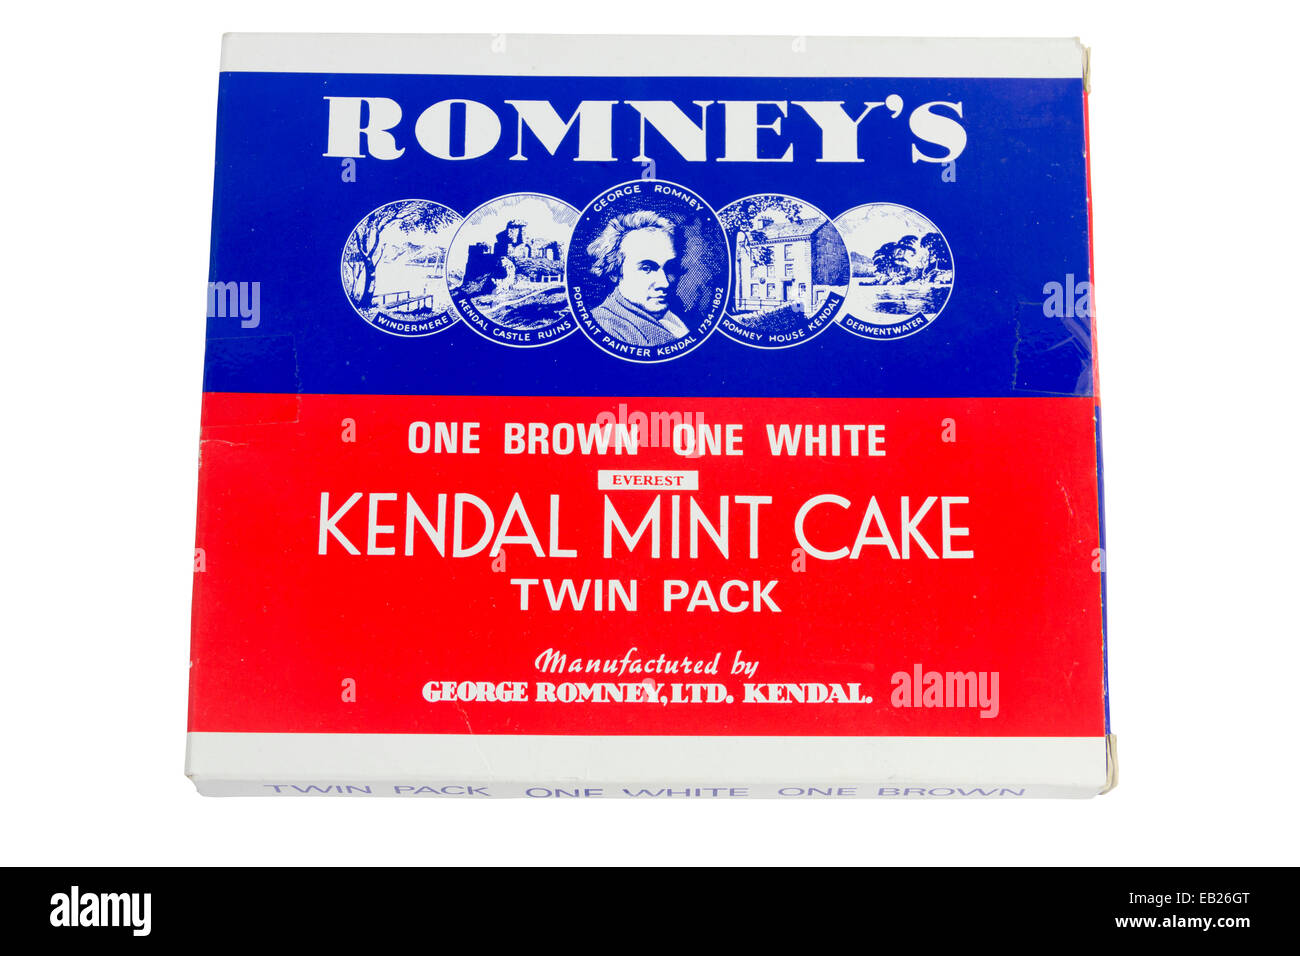 Double lot de Romney's Cake menthe Kendal. Banque D'Images